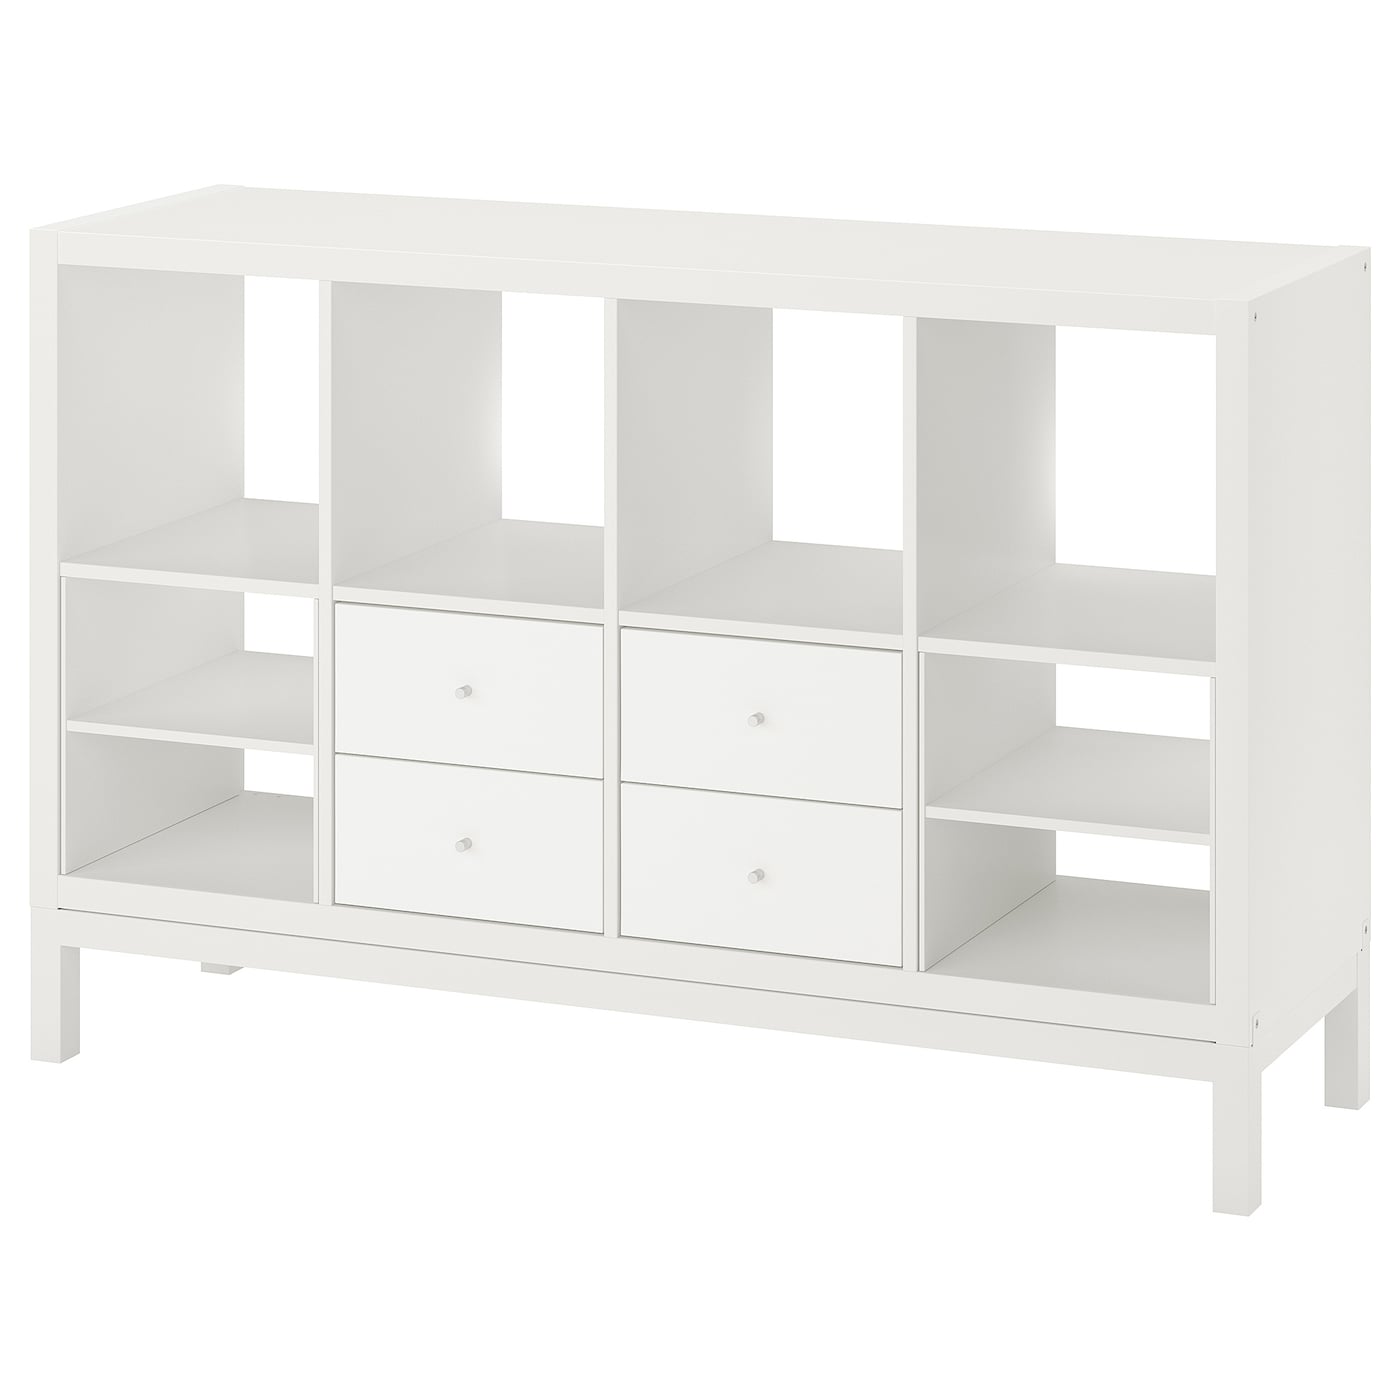 Книжный шкаф - IKEA KALLAX, 147х39х94 см, белый, КАЛЛАКС ИКЕА